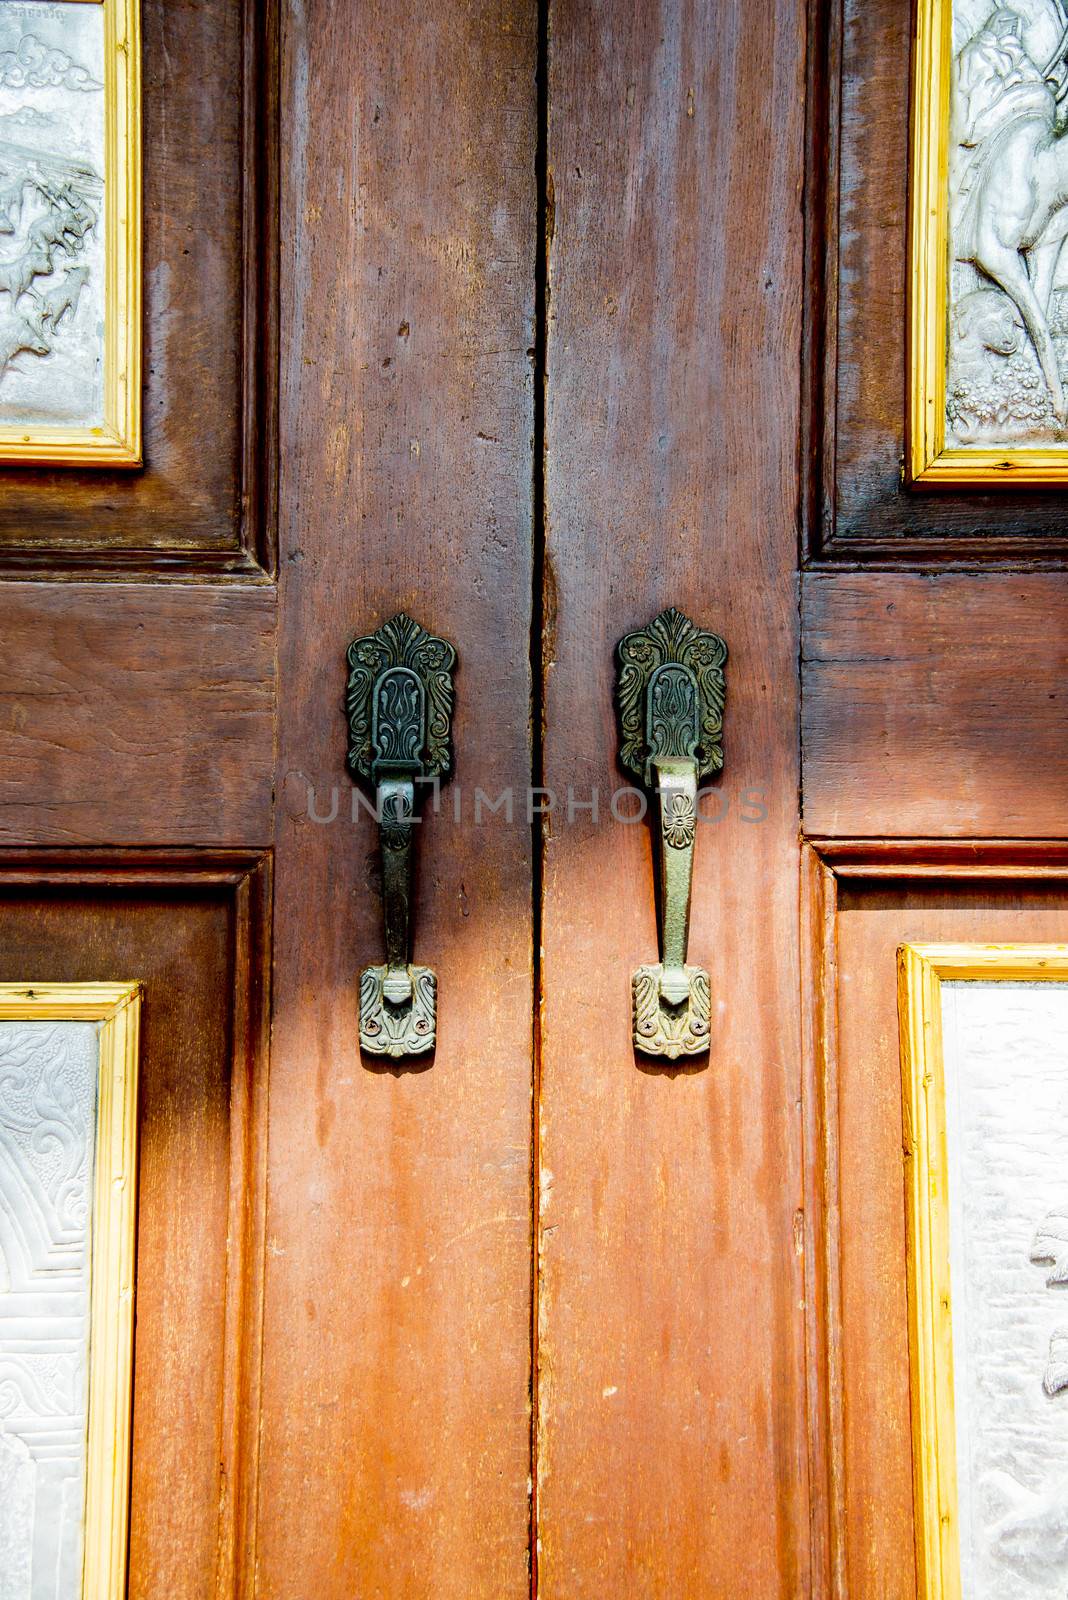 Door handle in church by gjeerawut